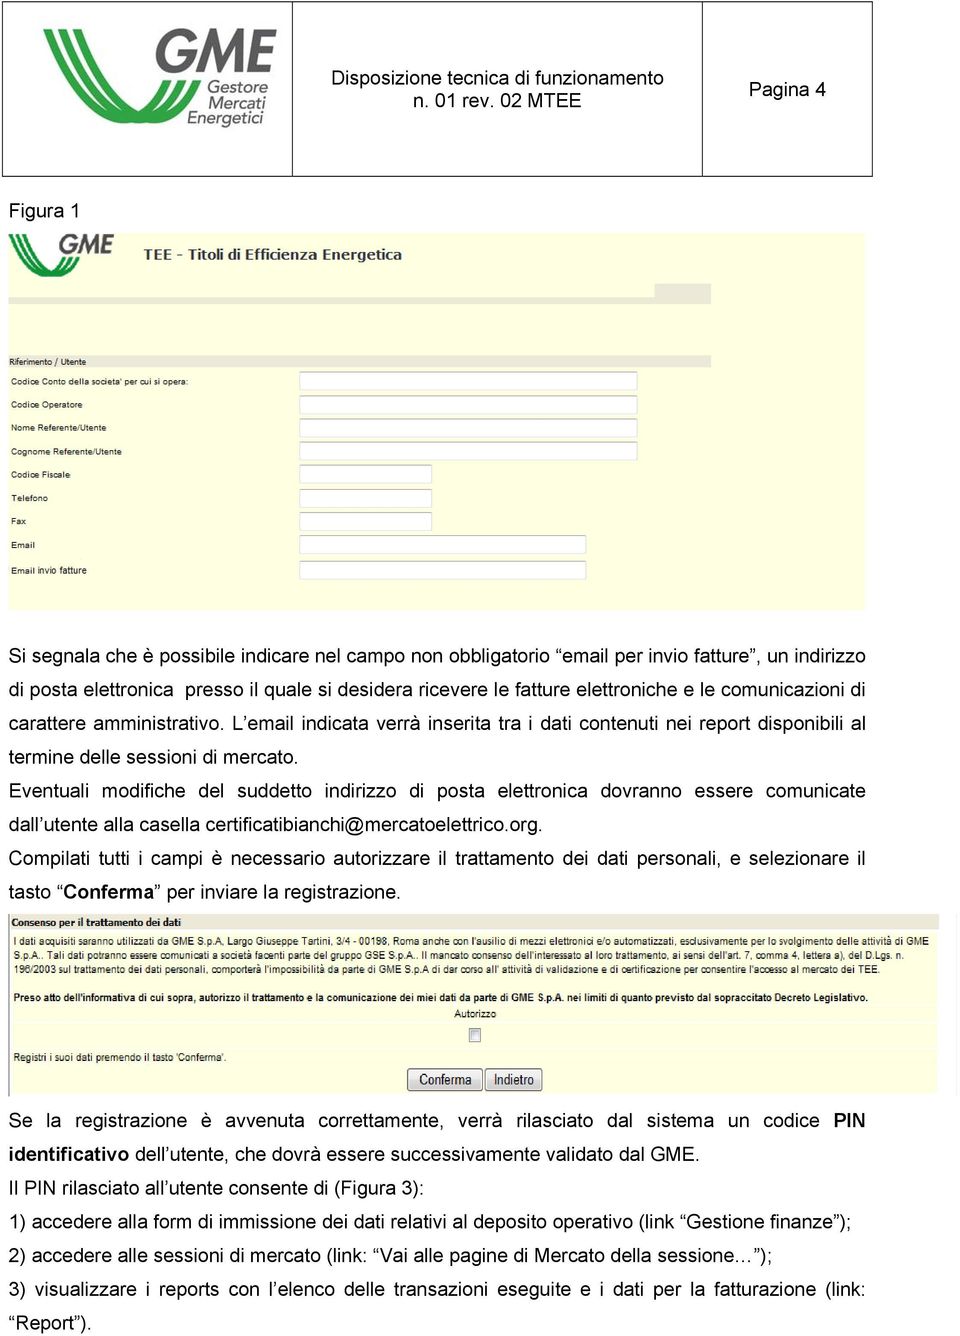 Eventuali modifiche del suddetto indirizzo di posta elettronica dovranno essere comunicate dall utente alla casella certificatibianchi@mercatoelettrico.org.